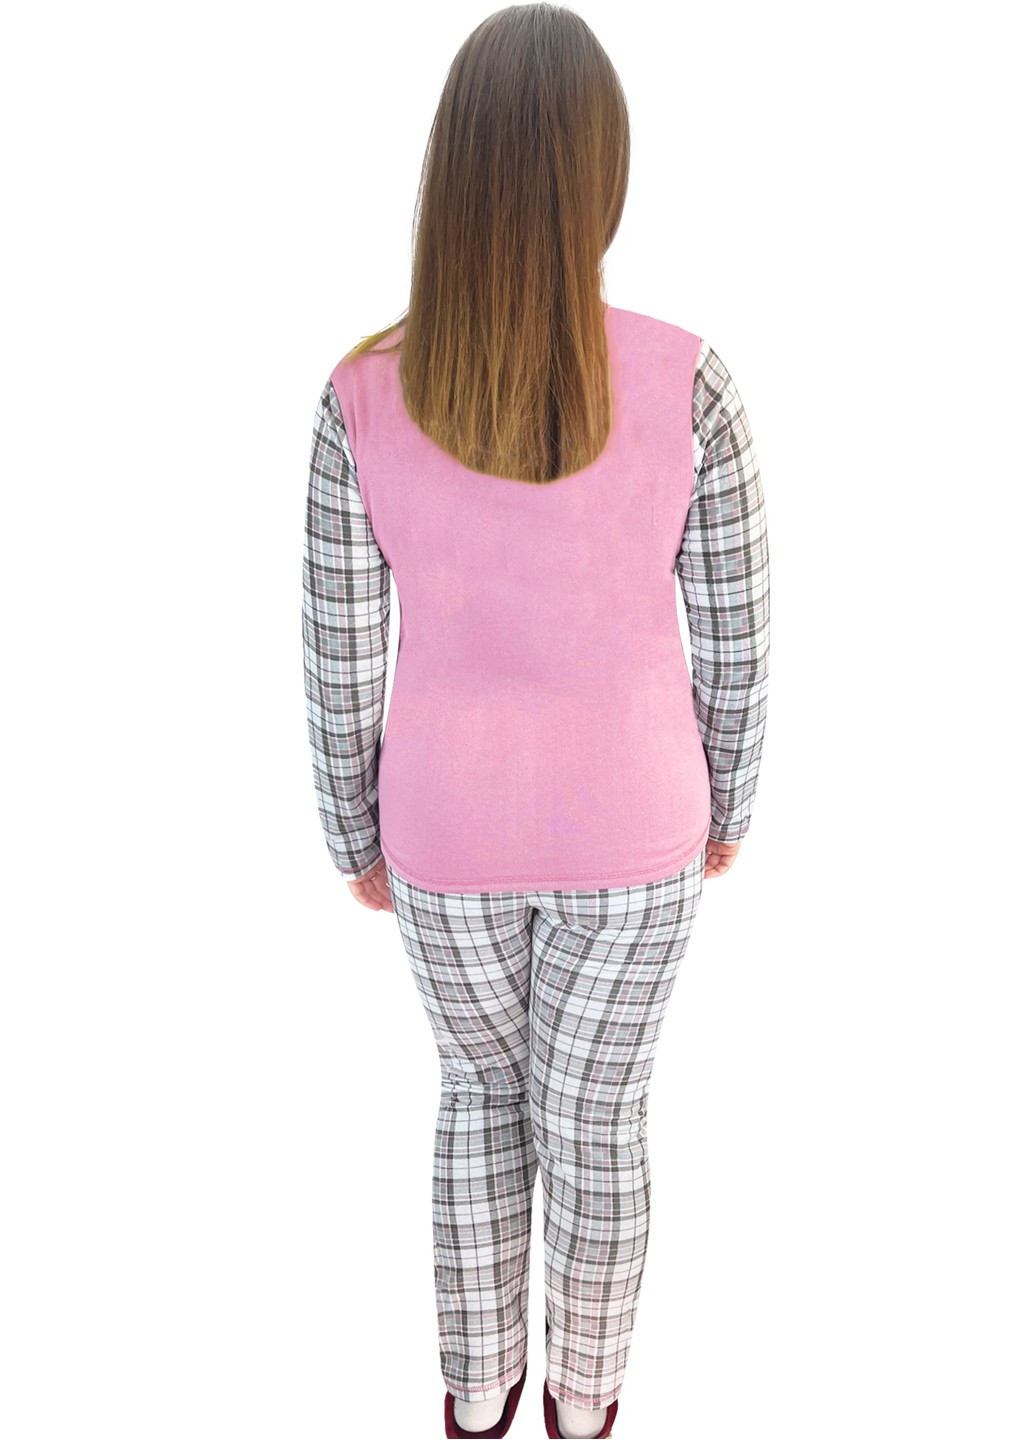 Пудровая всесезон пижама начесная клетка с накатом сова кофта + брюки Жемчужина стилей 1431